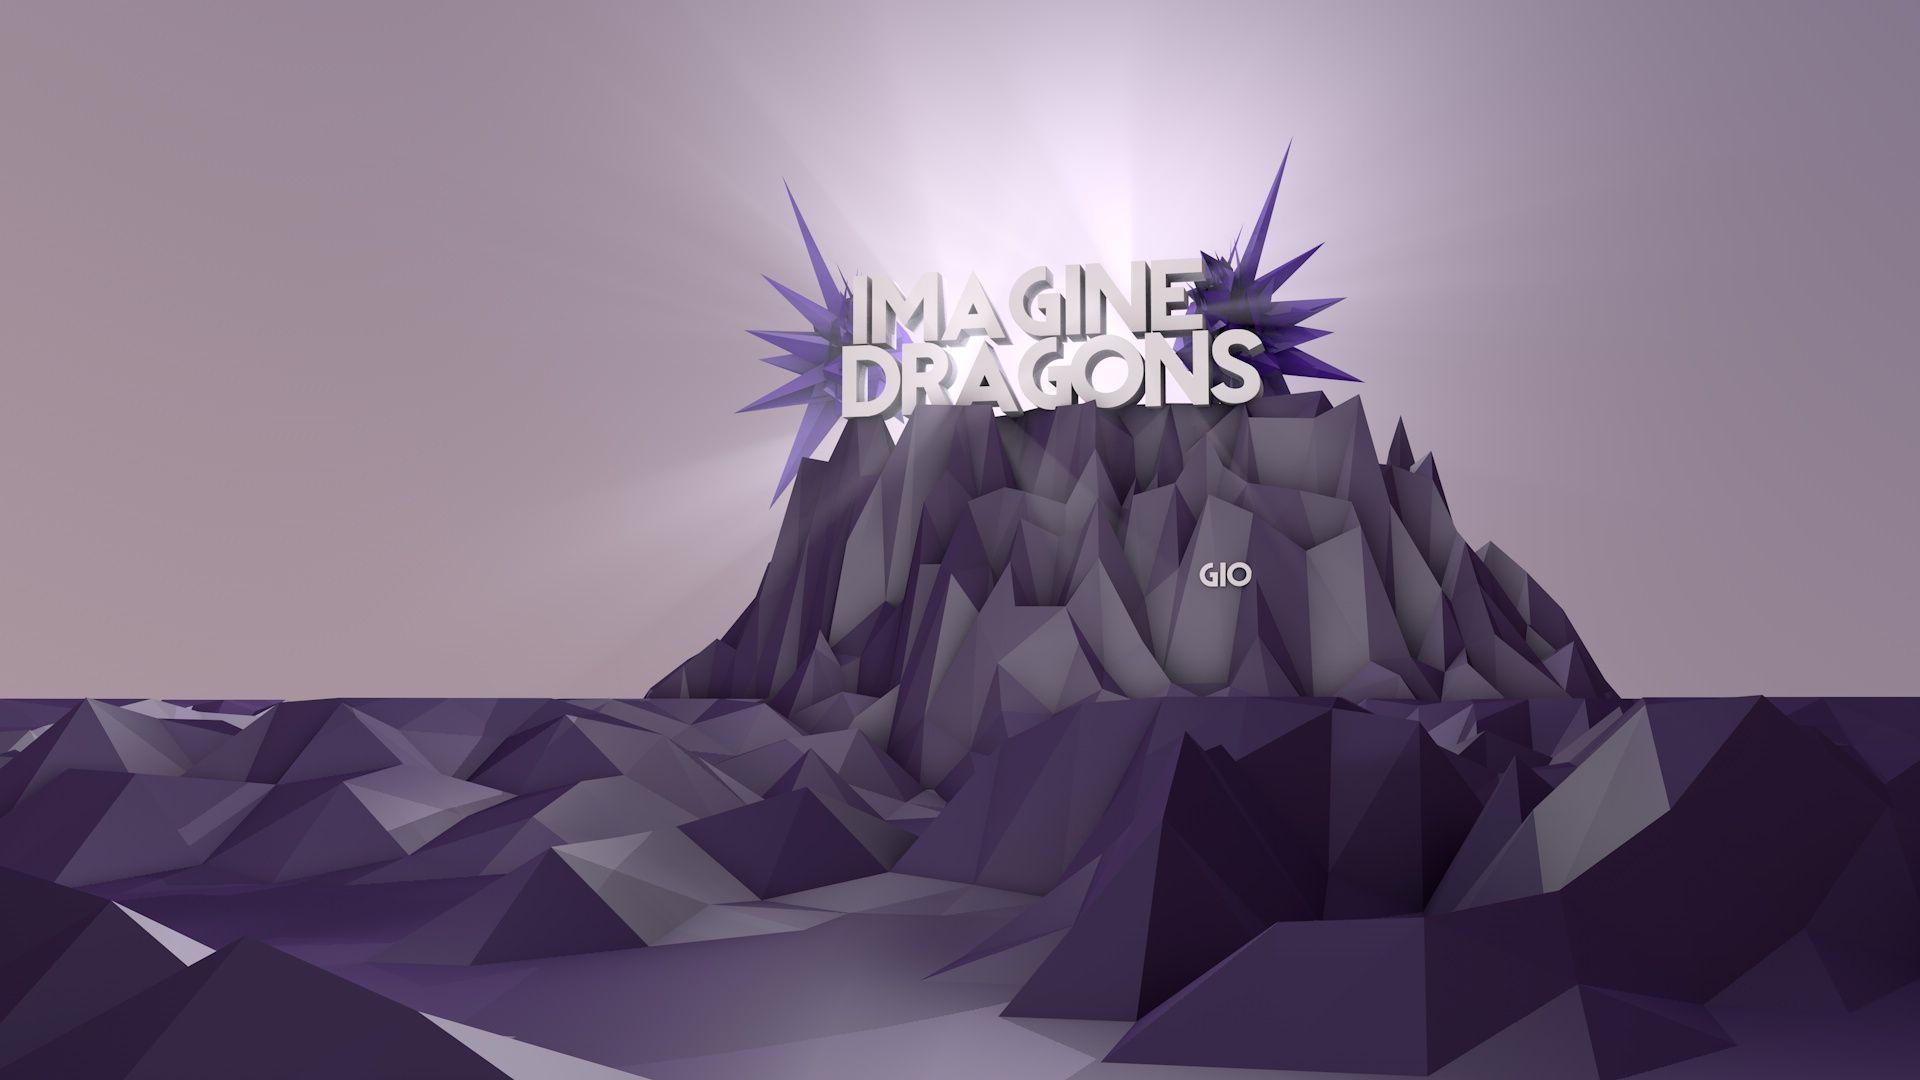 Image dragon песни. Imagine Dragons. Имеджин Драгонс логотип группы. Imagine Dragons обои. Imagine Dragons обложки.